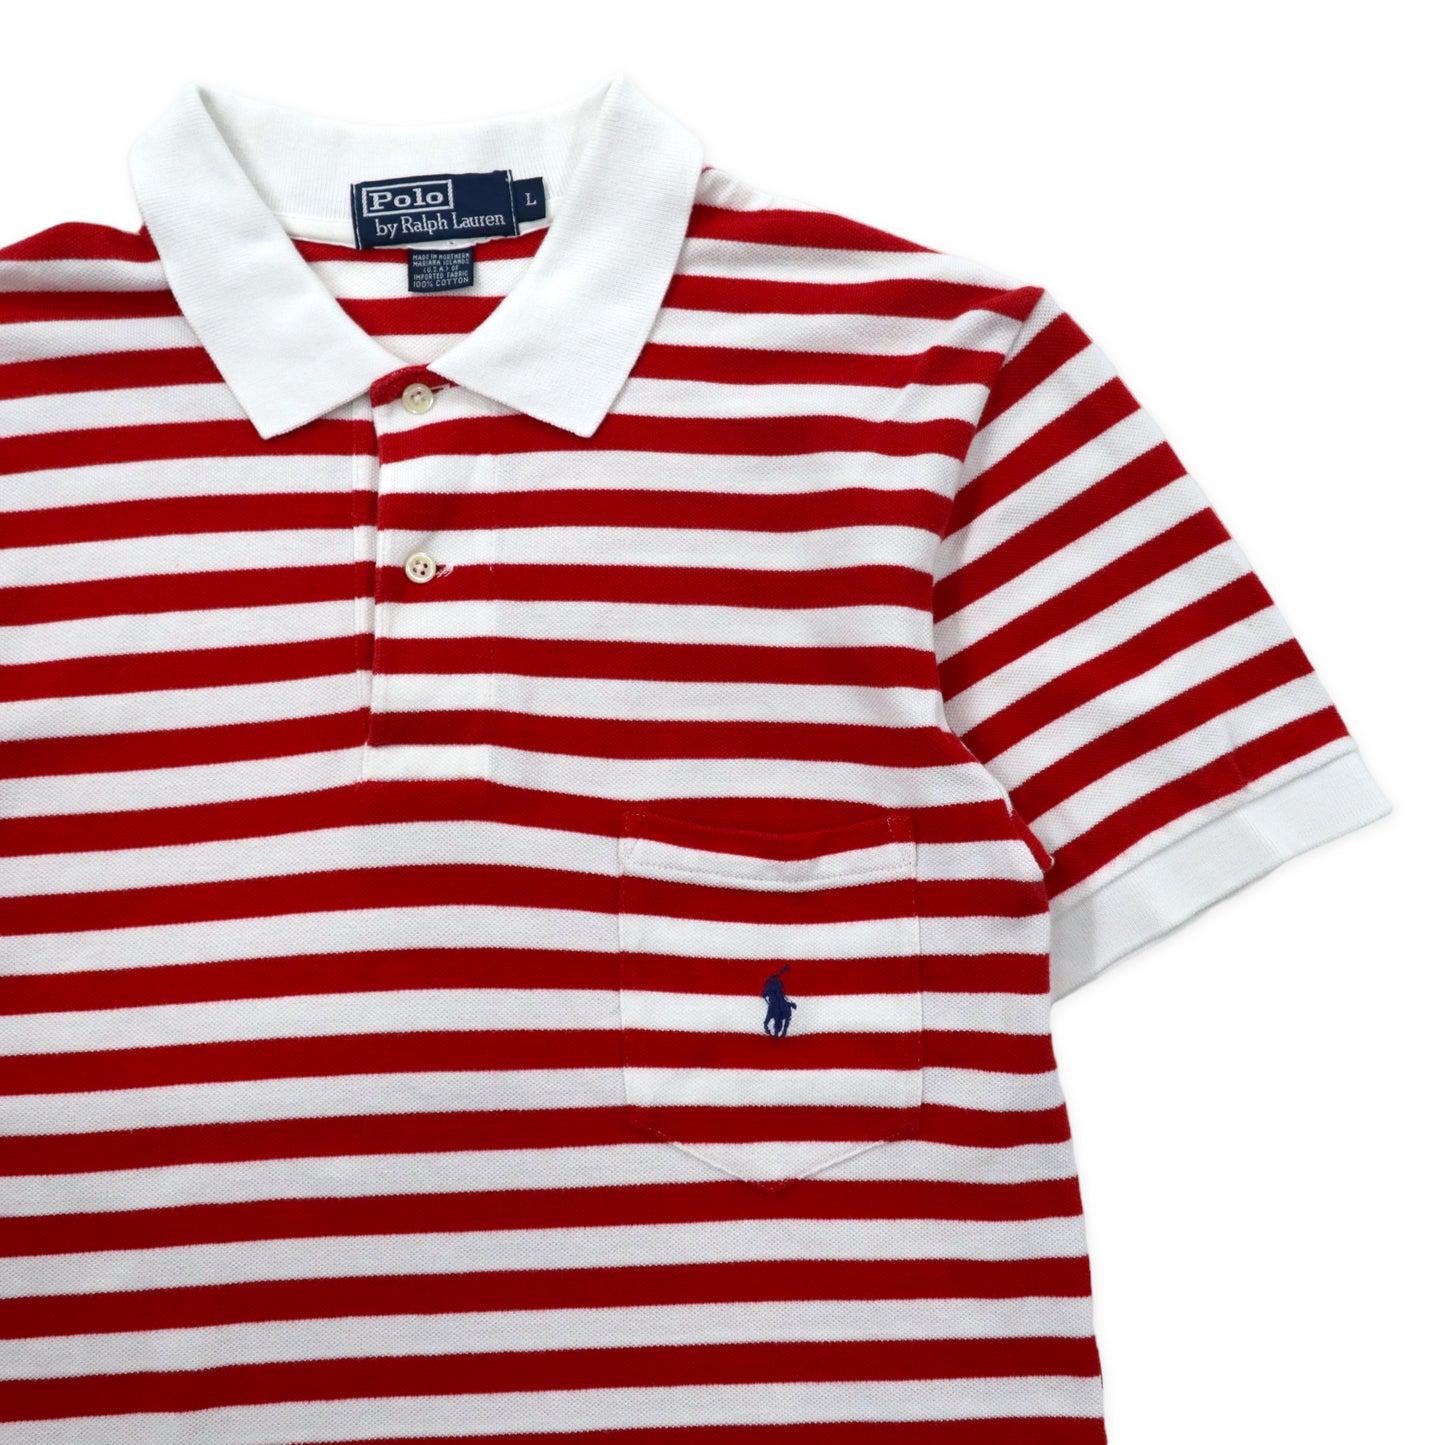 Polo by Ralph Lauren ボーダー ポロシャツ L レッド ホワイト コットン スモールポニー刺繍